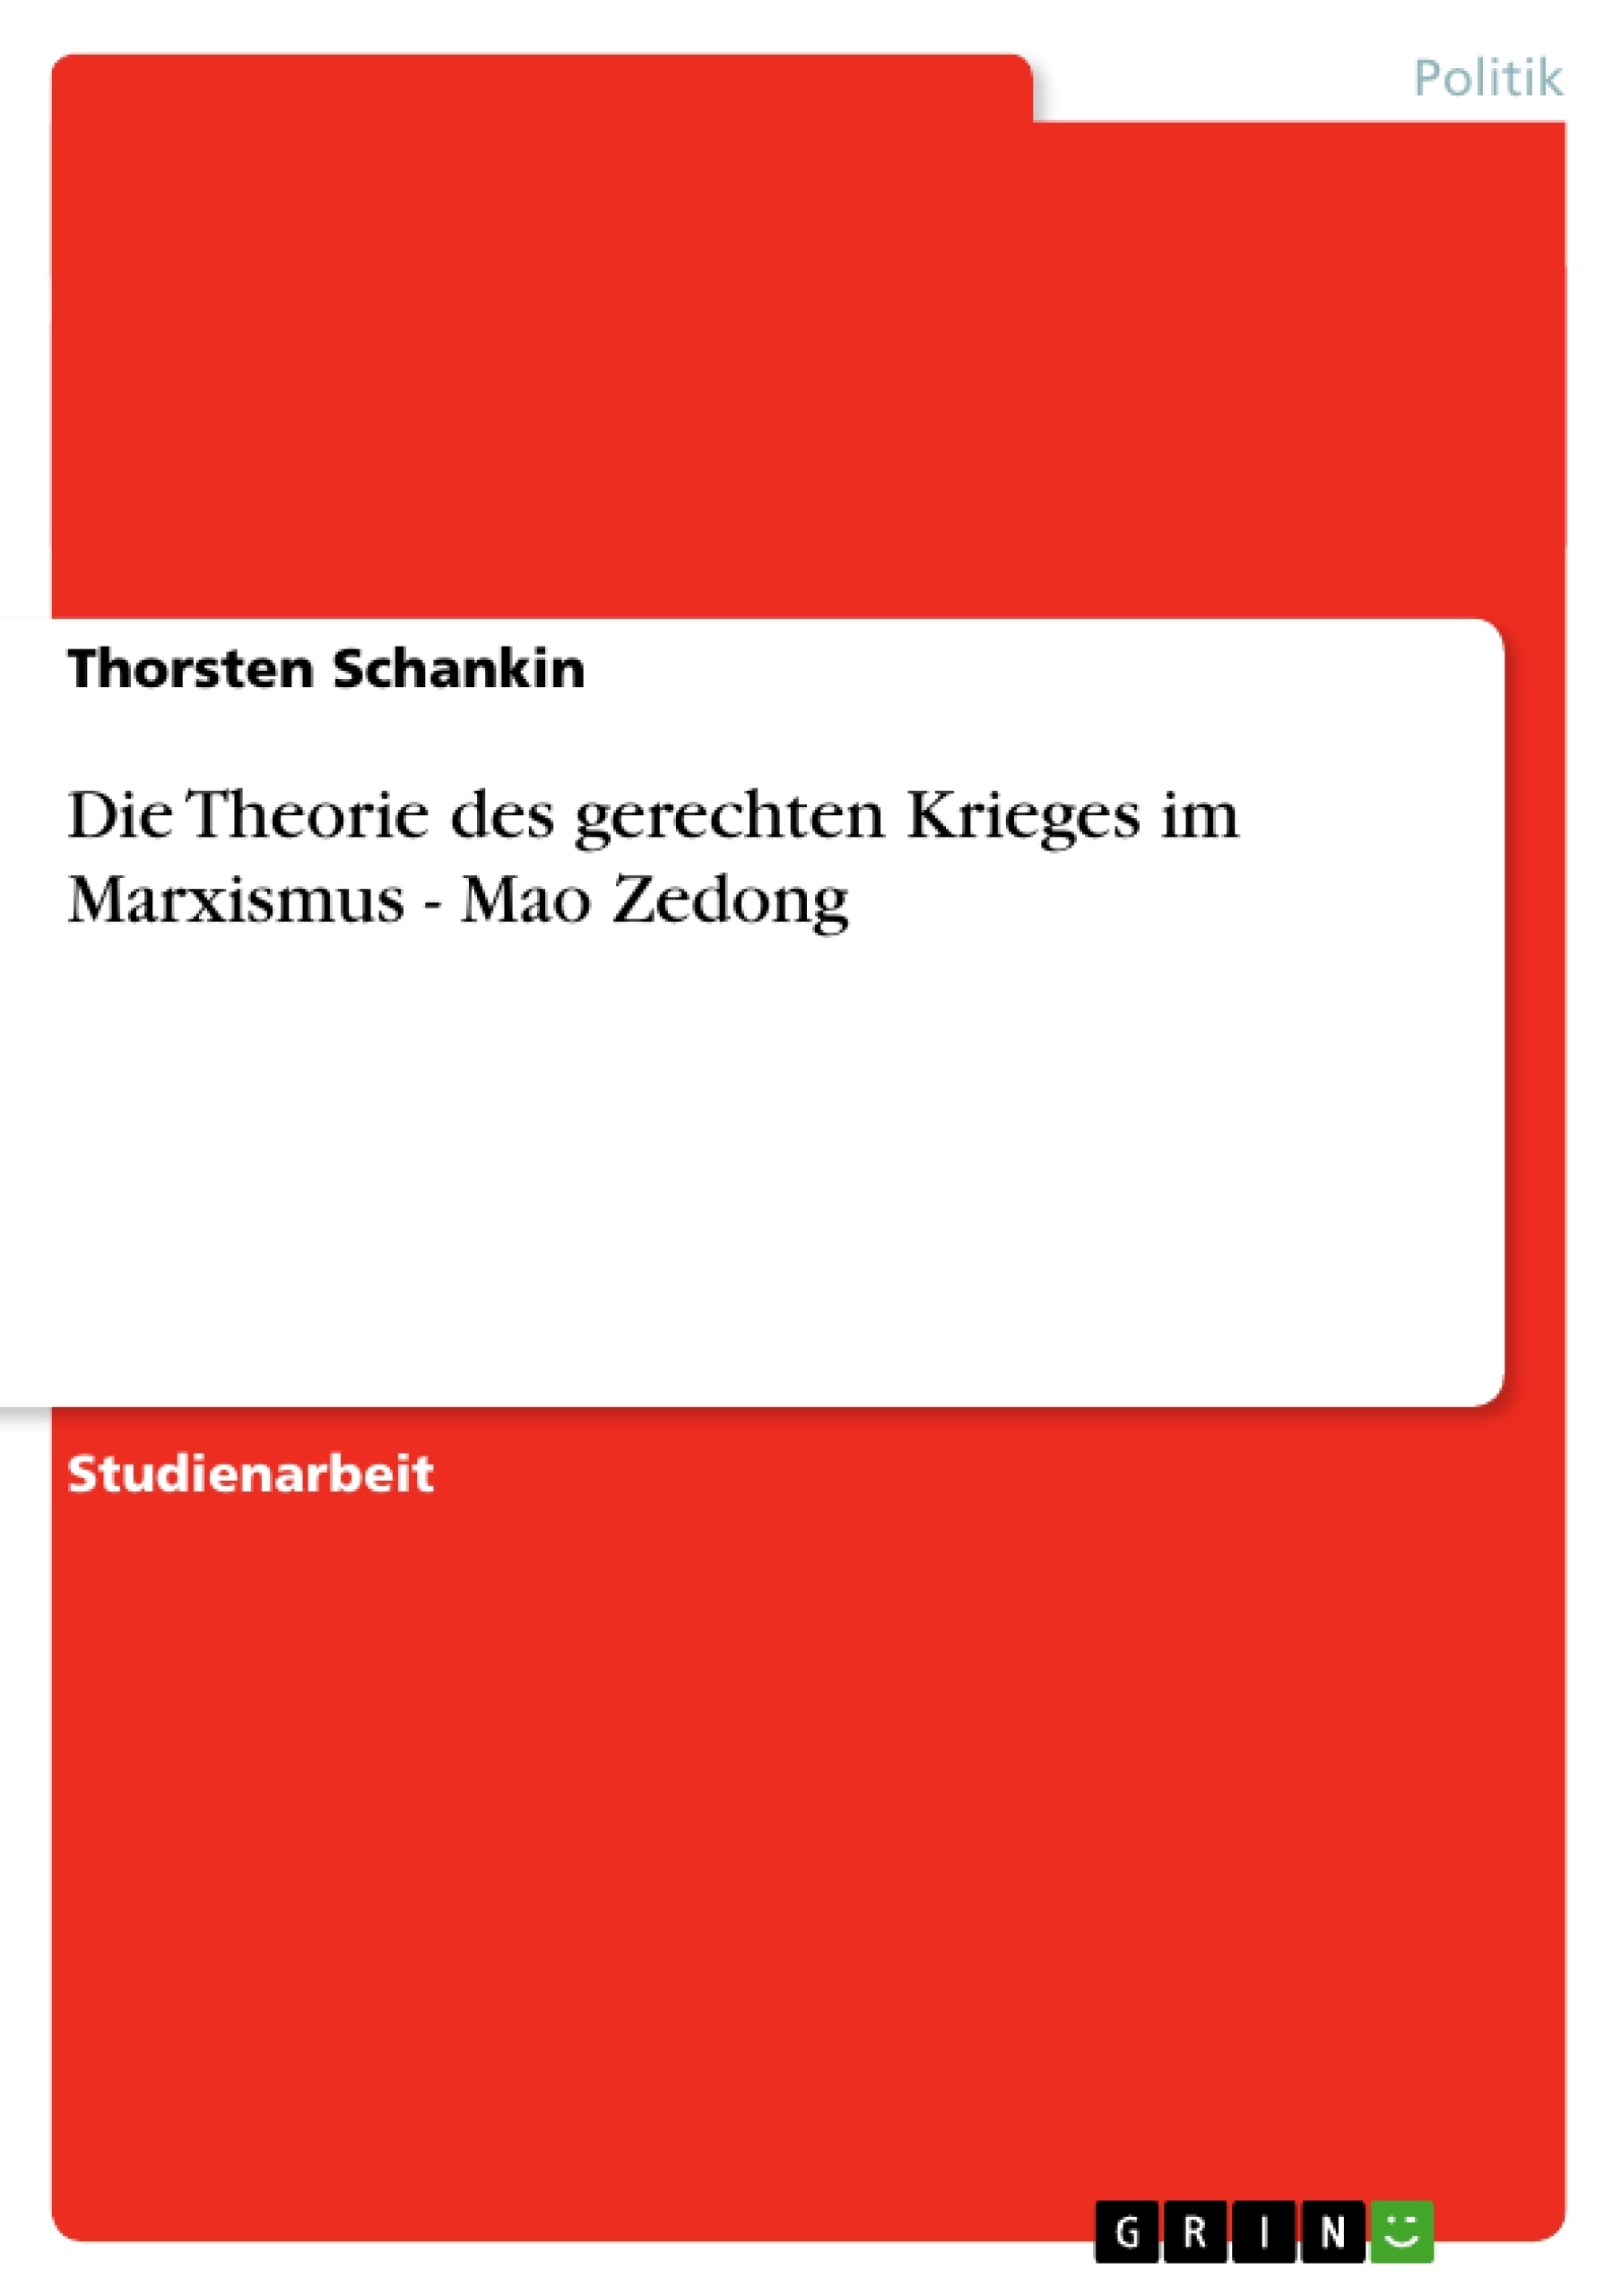 Título: Die Theorie des gerechten Krieges im Marxismus - Mao Zedong